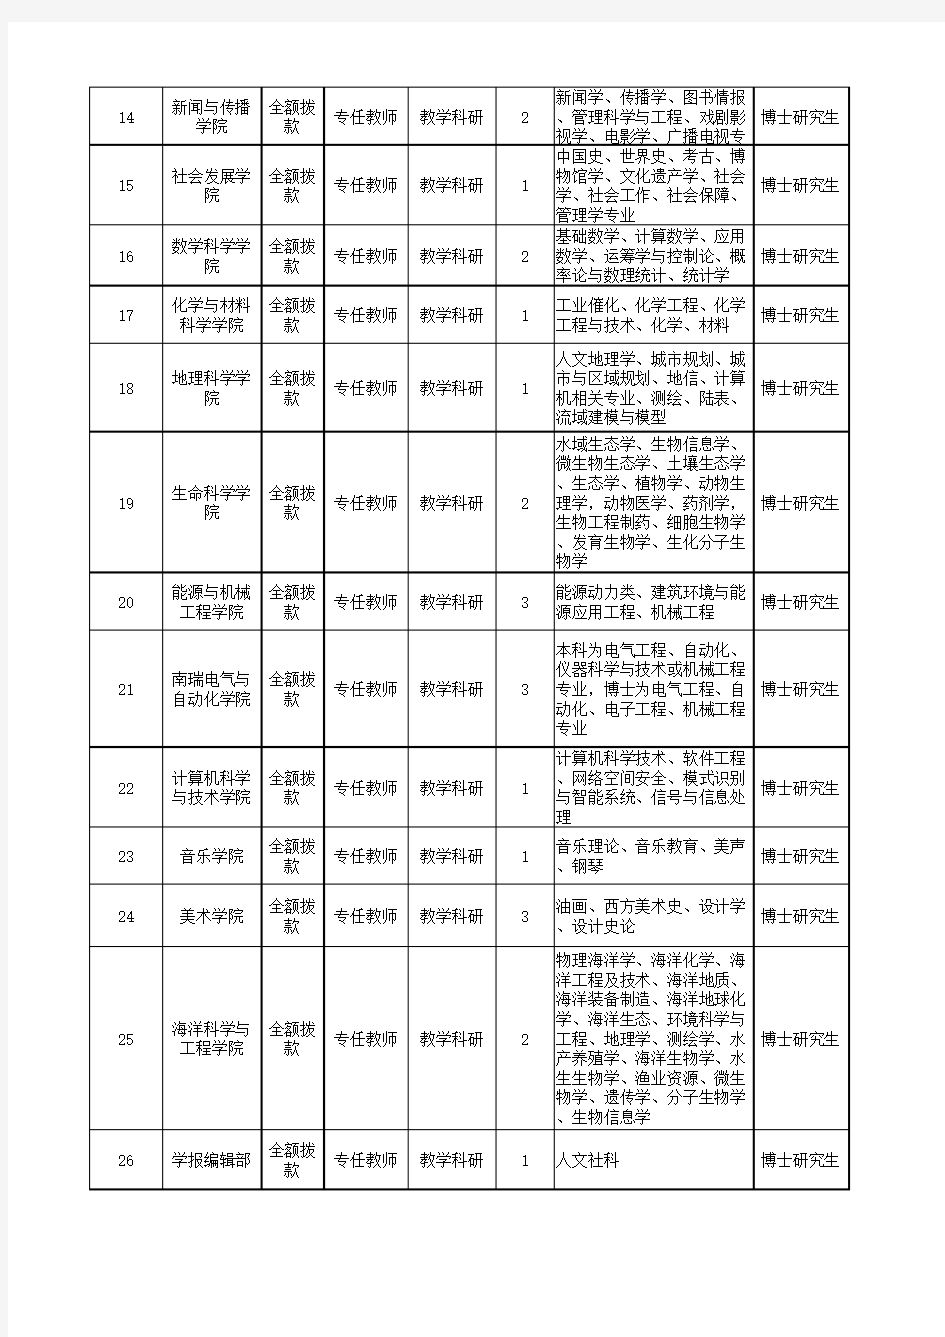 南京师范大学2019年教学科研公开招聘岗位表(A)